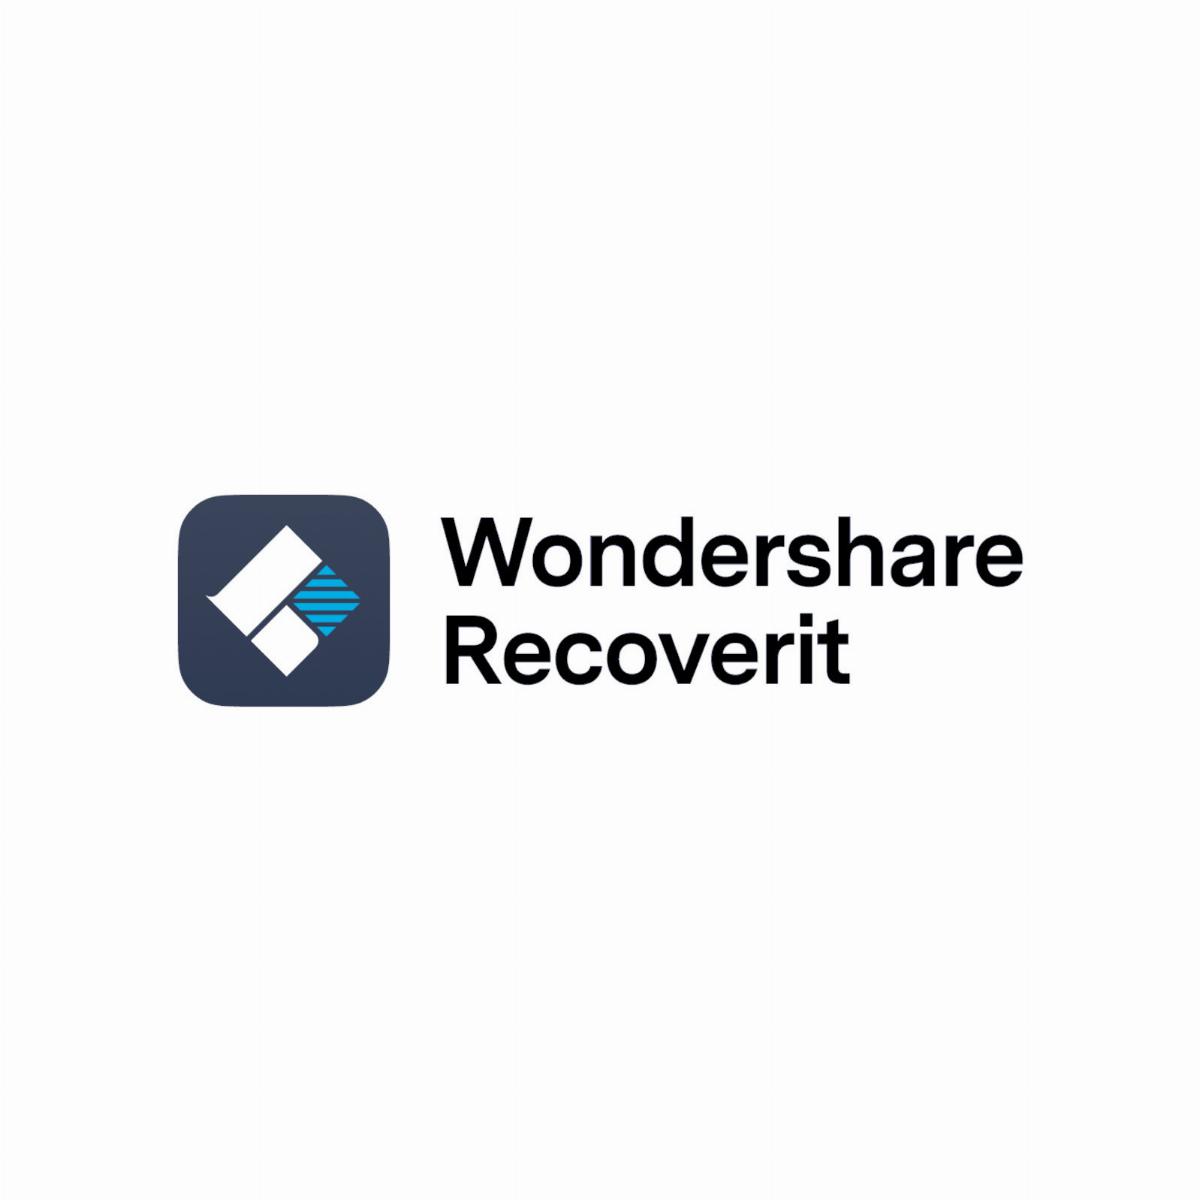 Recoverit di Wondershare: dove gli altri falliscono, Recoverit recupera i tuoi dati